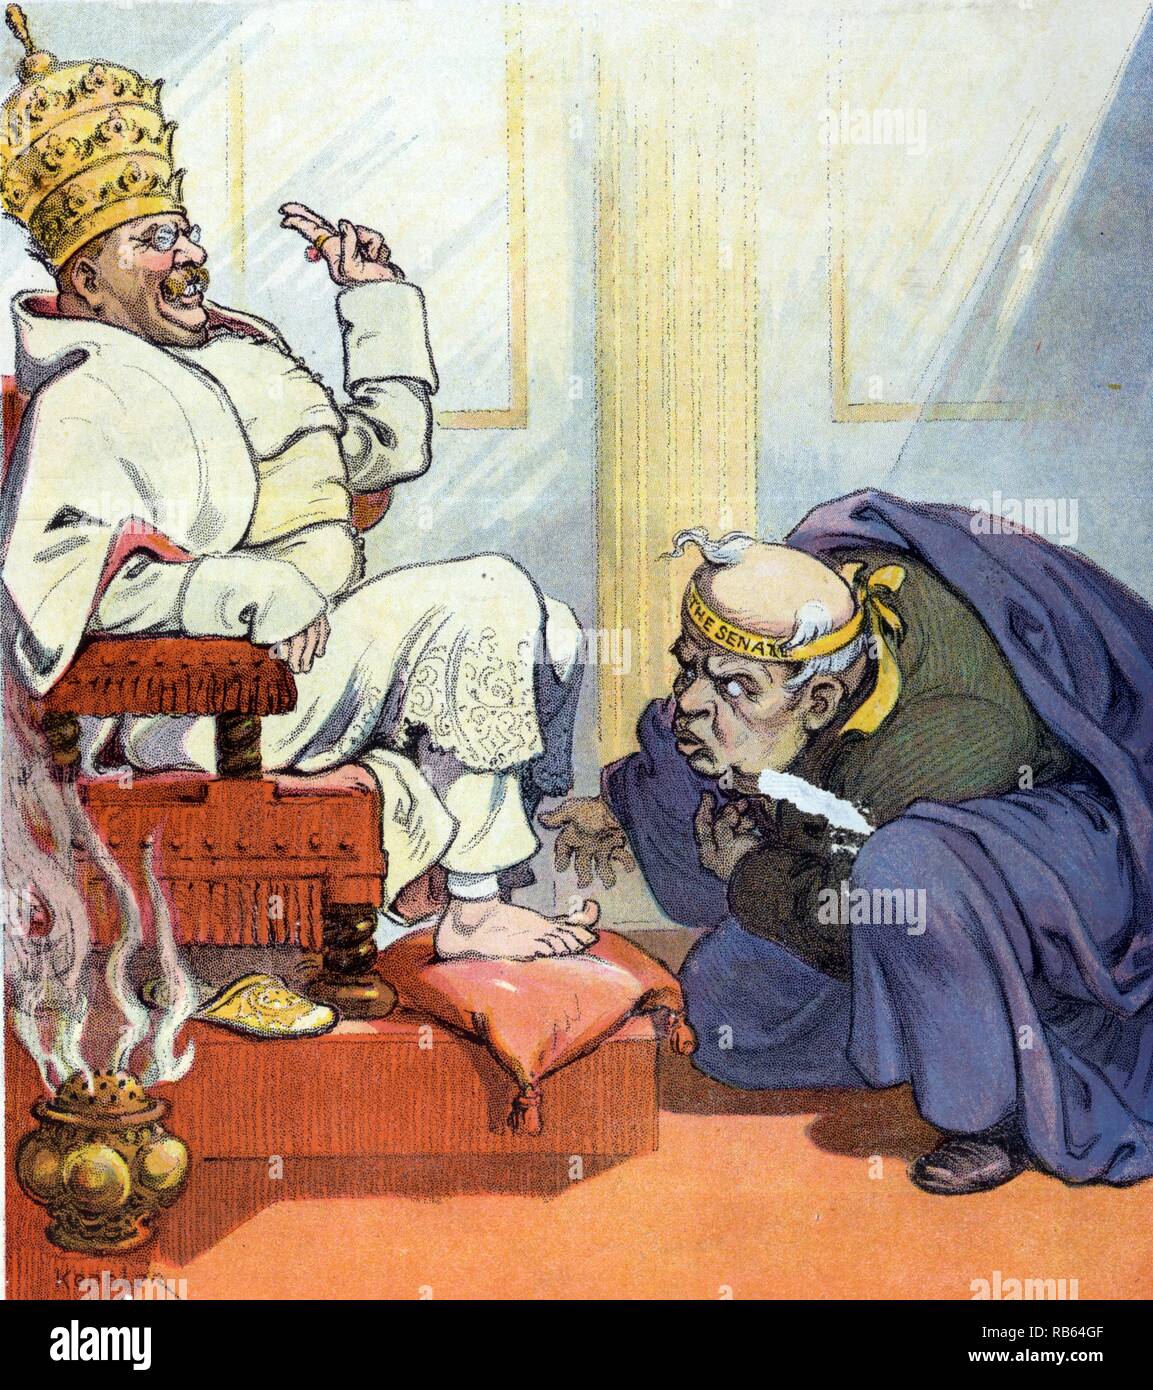 Le premier pape Theo par Udo Keppler, 1872-1956, l'artiste. Publié 1907. L'illustration montre Theodore Roosevelt comme "Pape" Theo la première assise sur un trône, portant la tiare papale, qu'un homme portant la mention "Le Sénat' s'incline devant lui. Banque D'Images